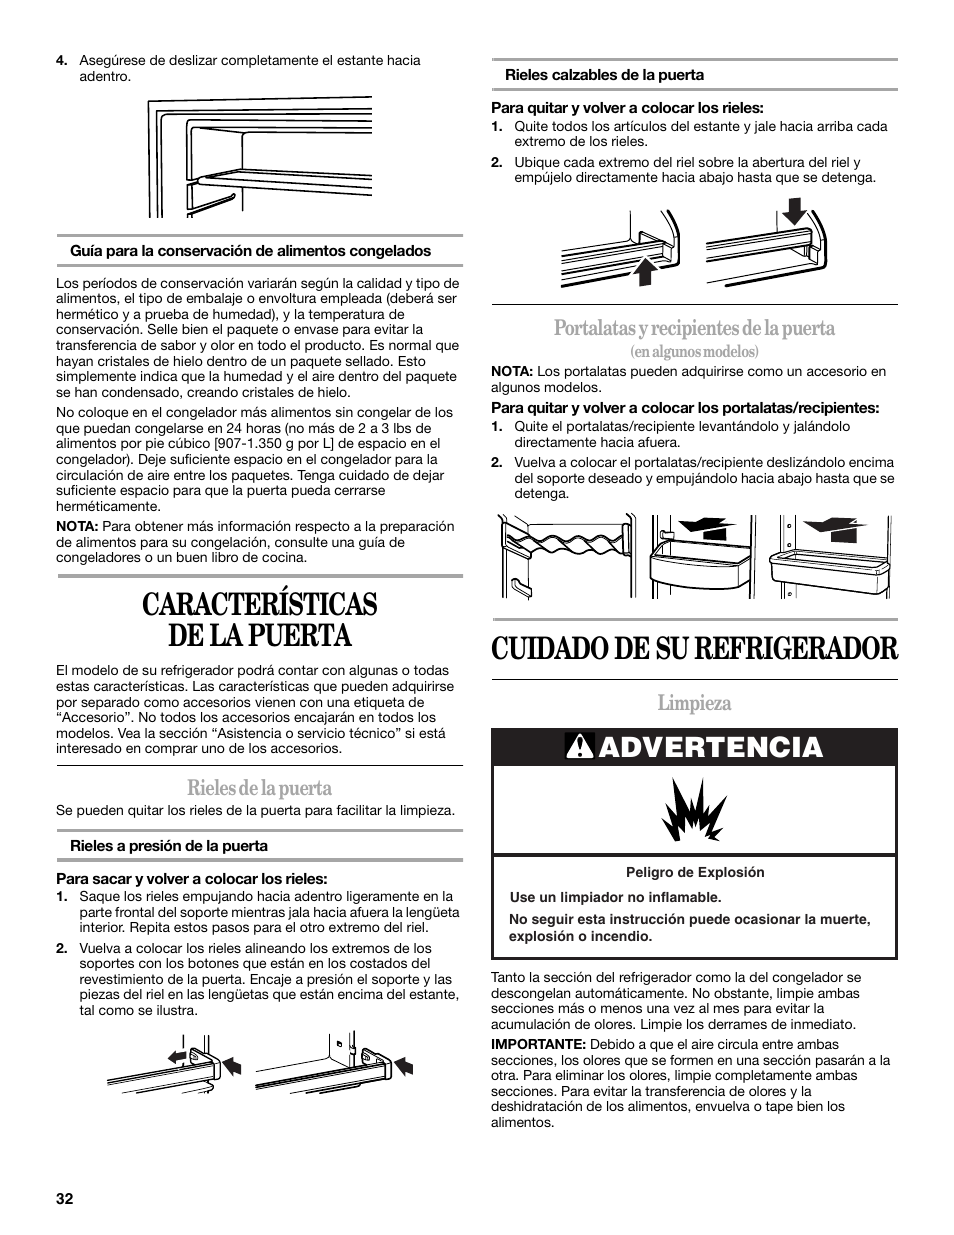 En honor télex Usual Características de la puerta, Cuidado de su refrigerador, Advertencia |  Whirlpool W8TXNWMBQ User Manual | Page 32 / 56 | Original mode